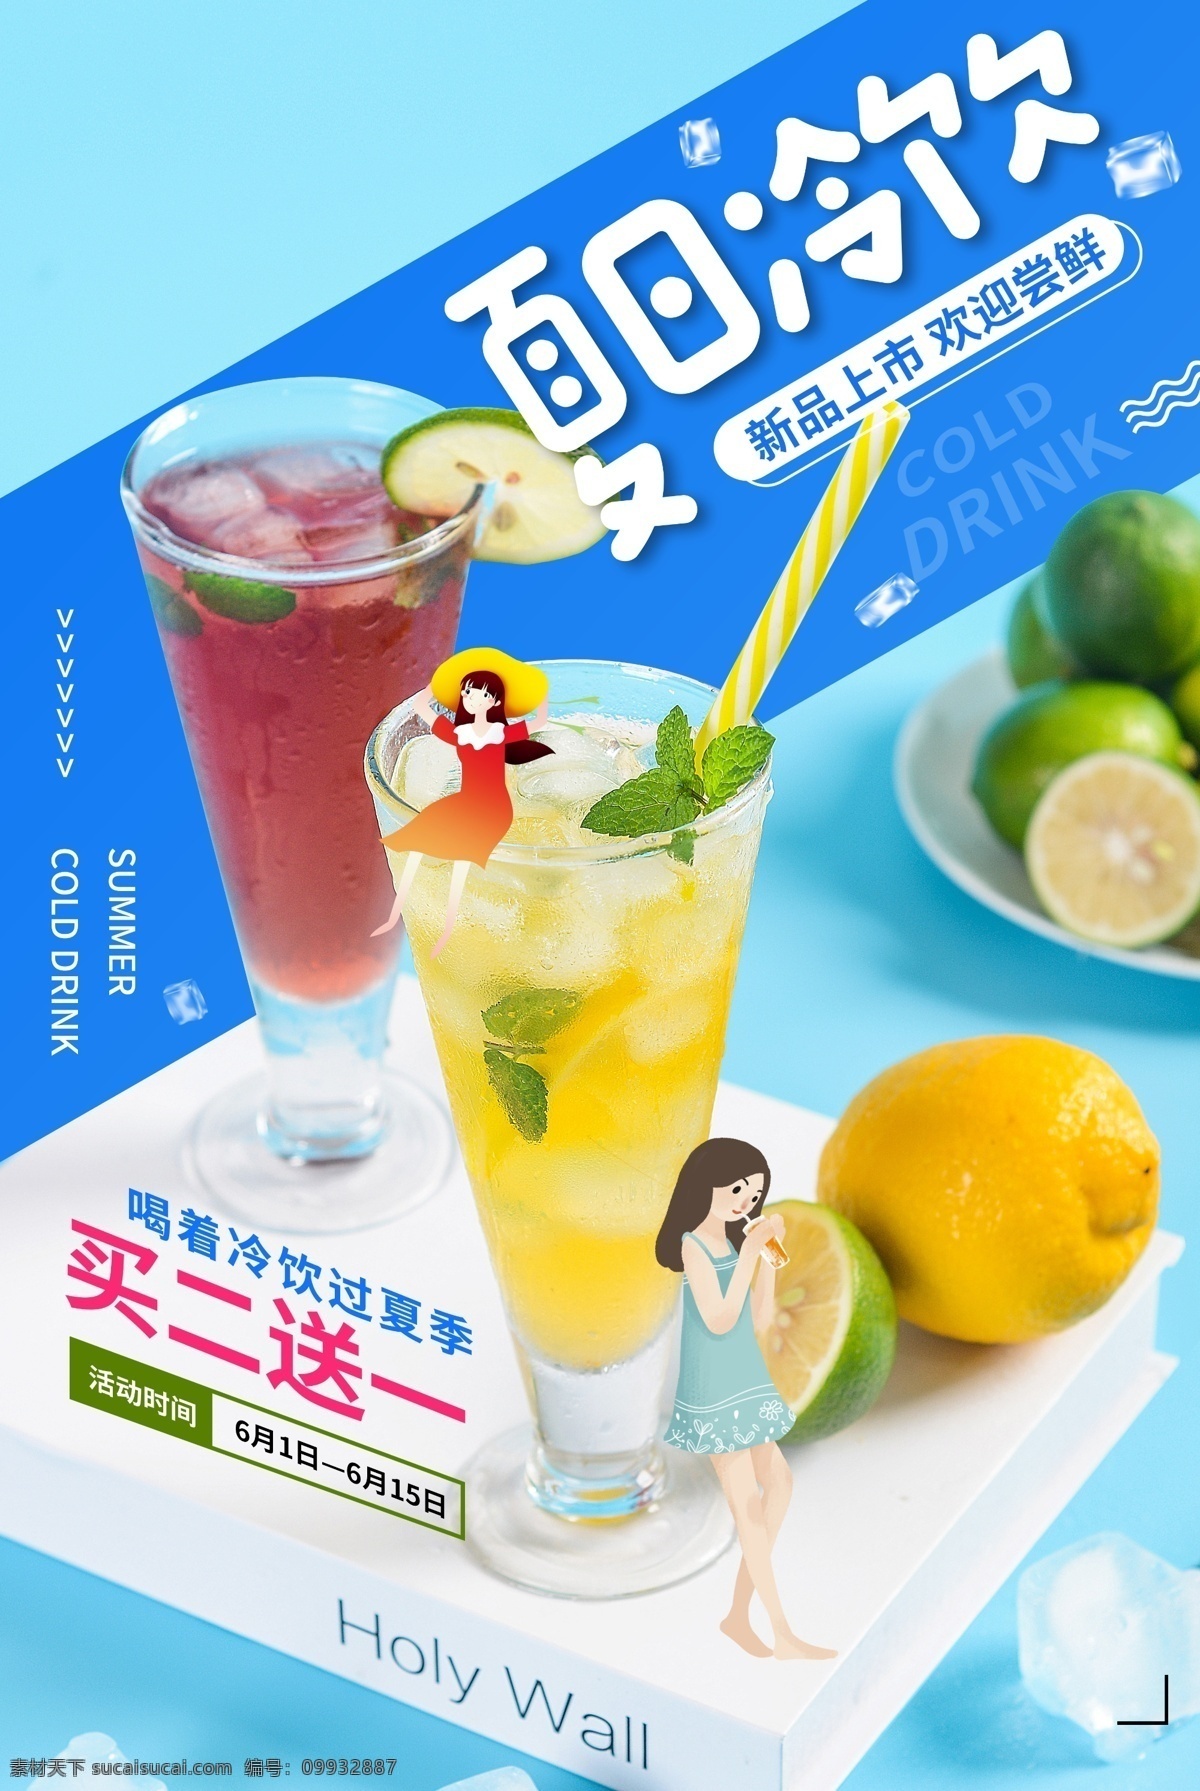 夏日 饮品 活动 宣传海报 宣传 海报 饮料 甜品 类